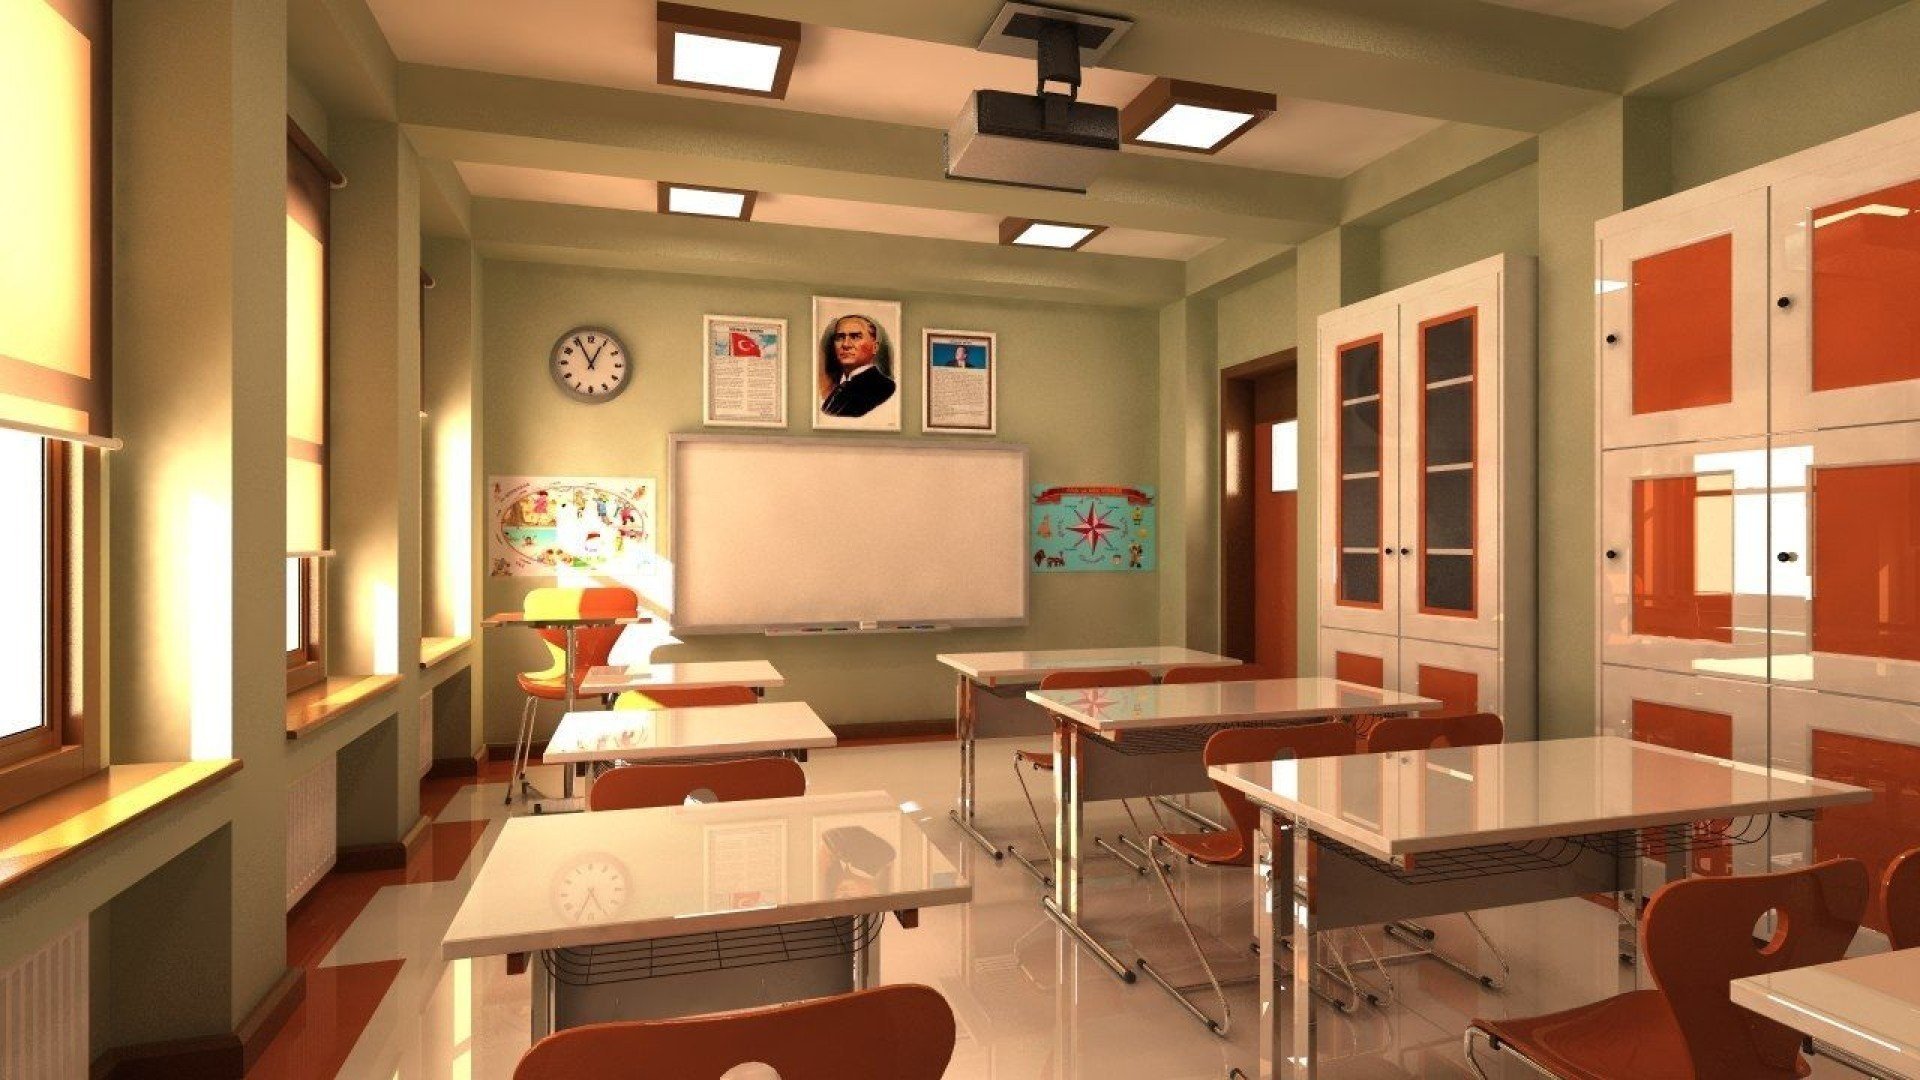 Образовательный кабинет. Интерьер класса. Современный кабинет в школе. Интерьер учебного класса. Интерьер классной комнаты в школе.